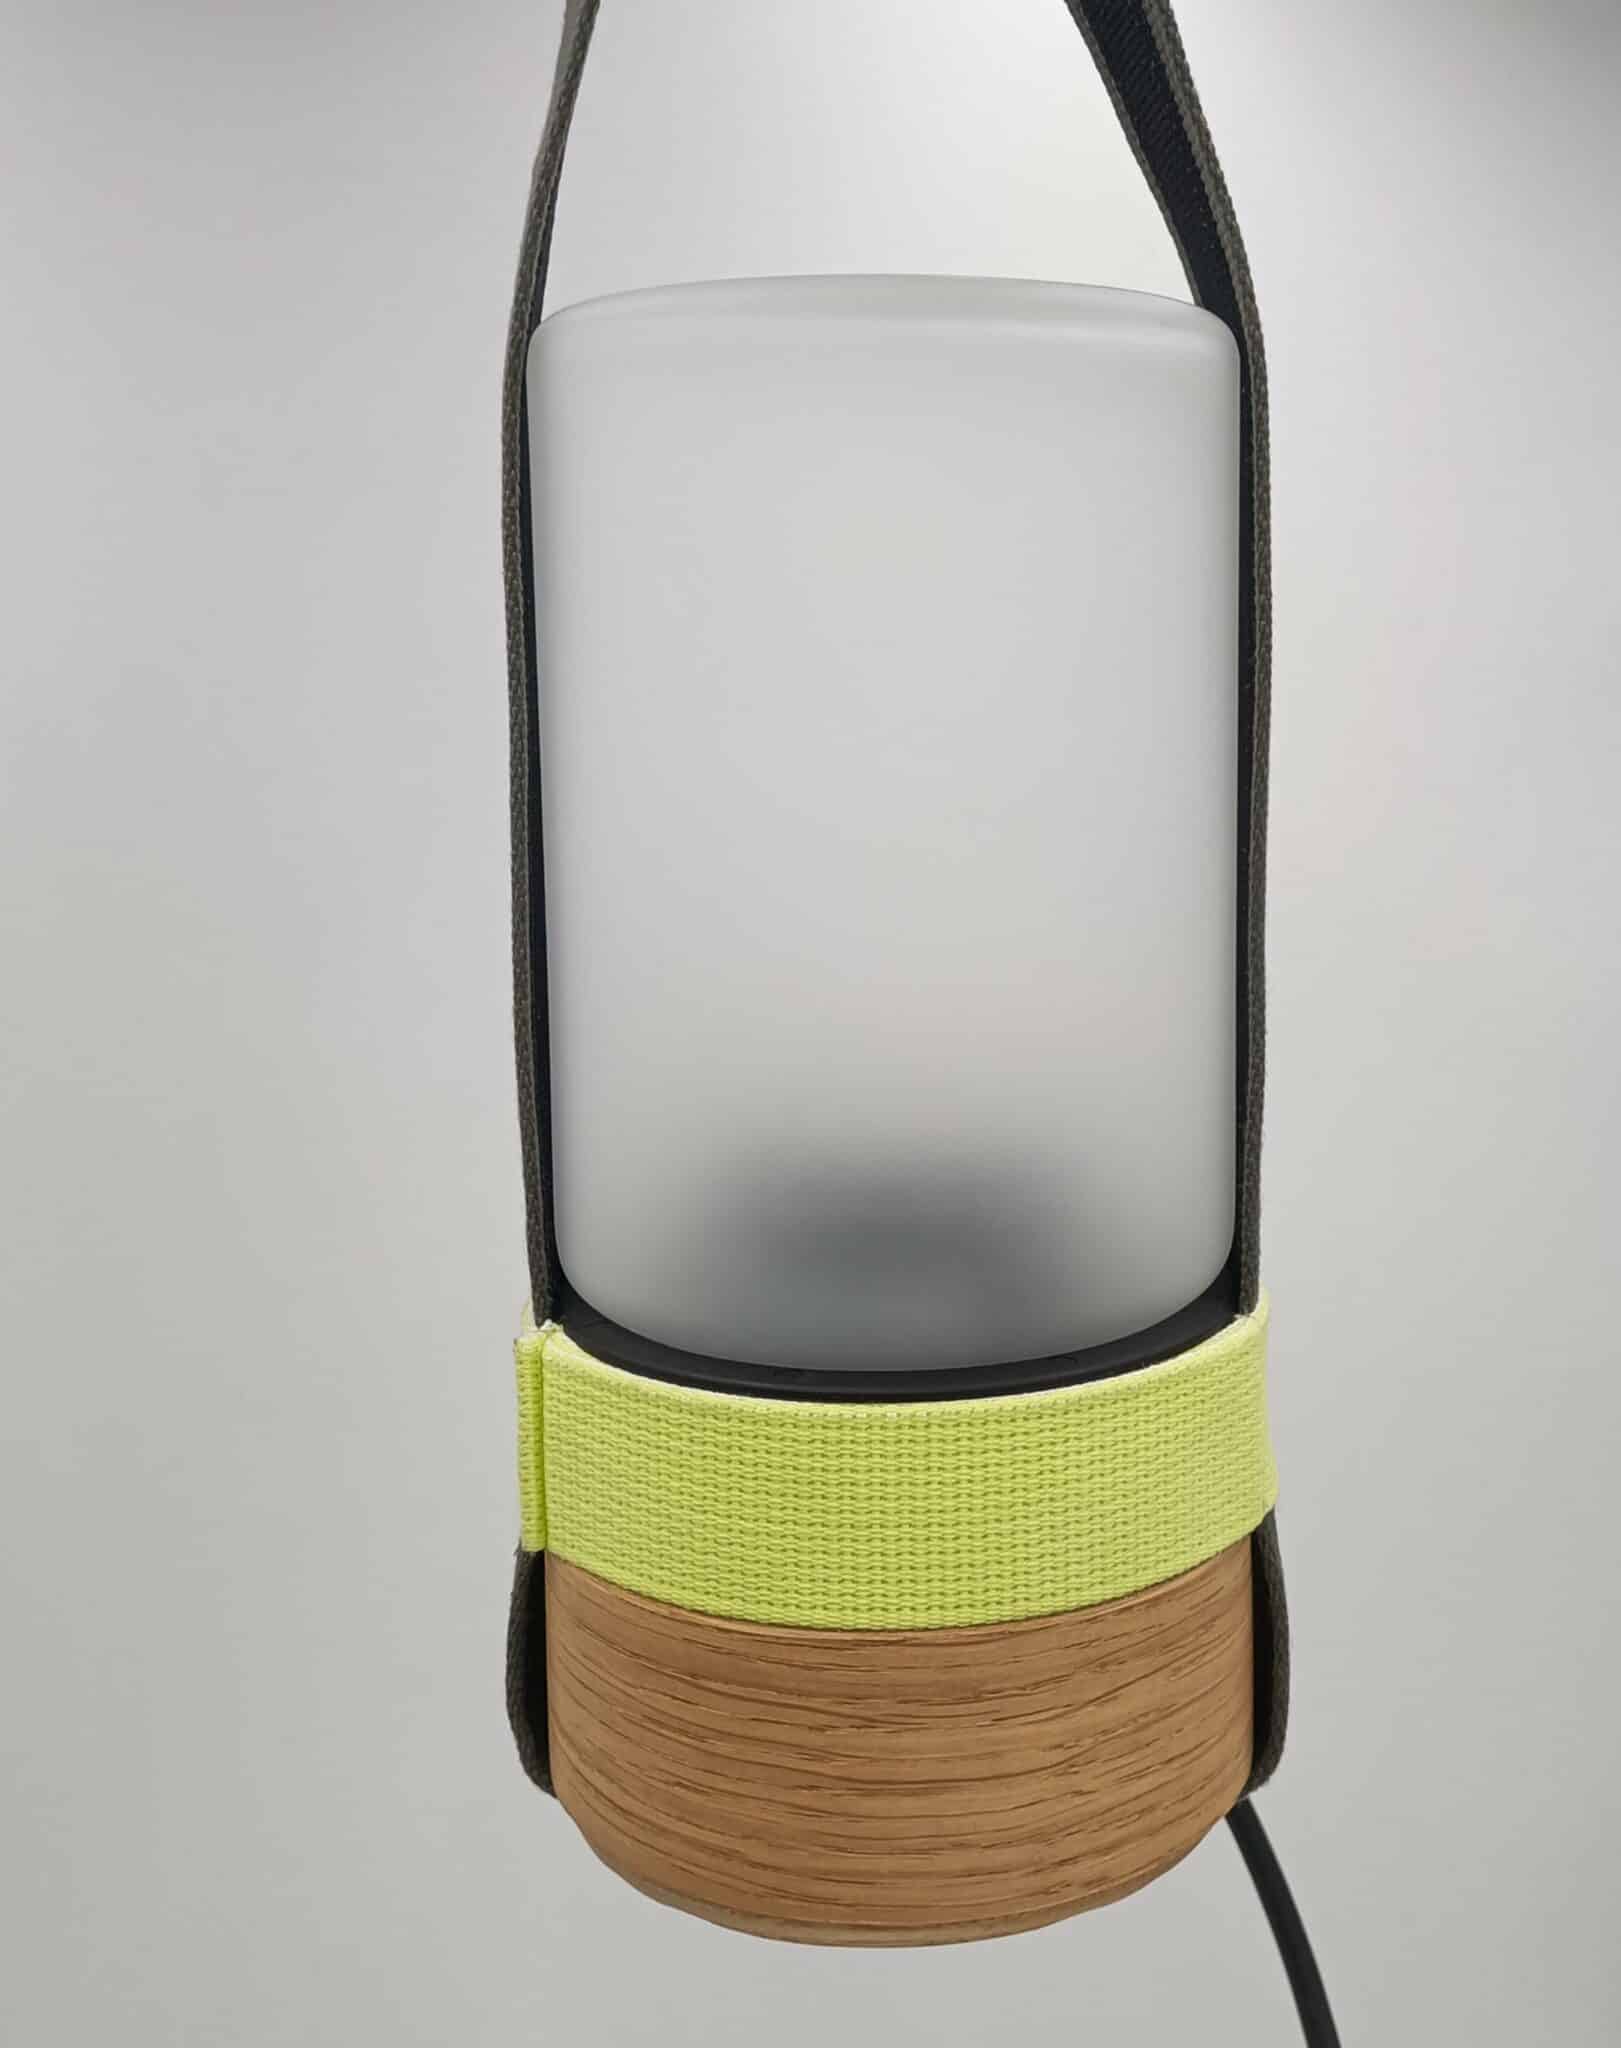 Lampe intérieure et extérieure avec sangles amovibles grises et jaunes par Made by bobine